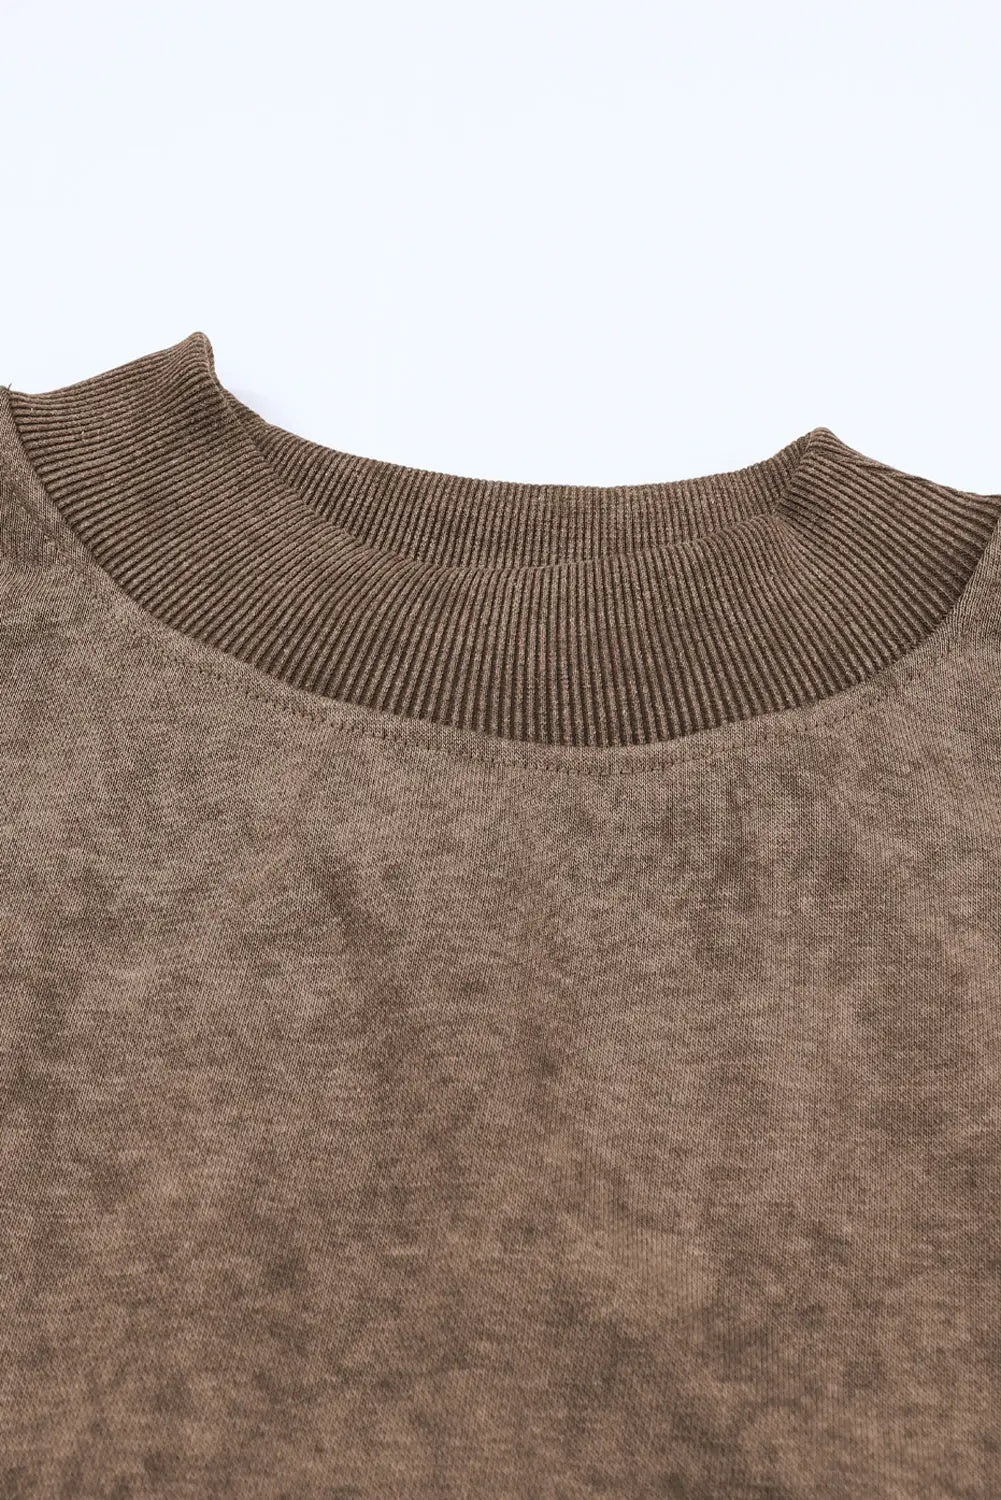 Brown drop shoulder crew neck pullover sweatshirt - tops